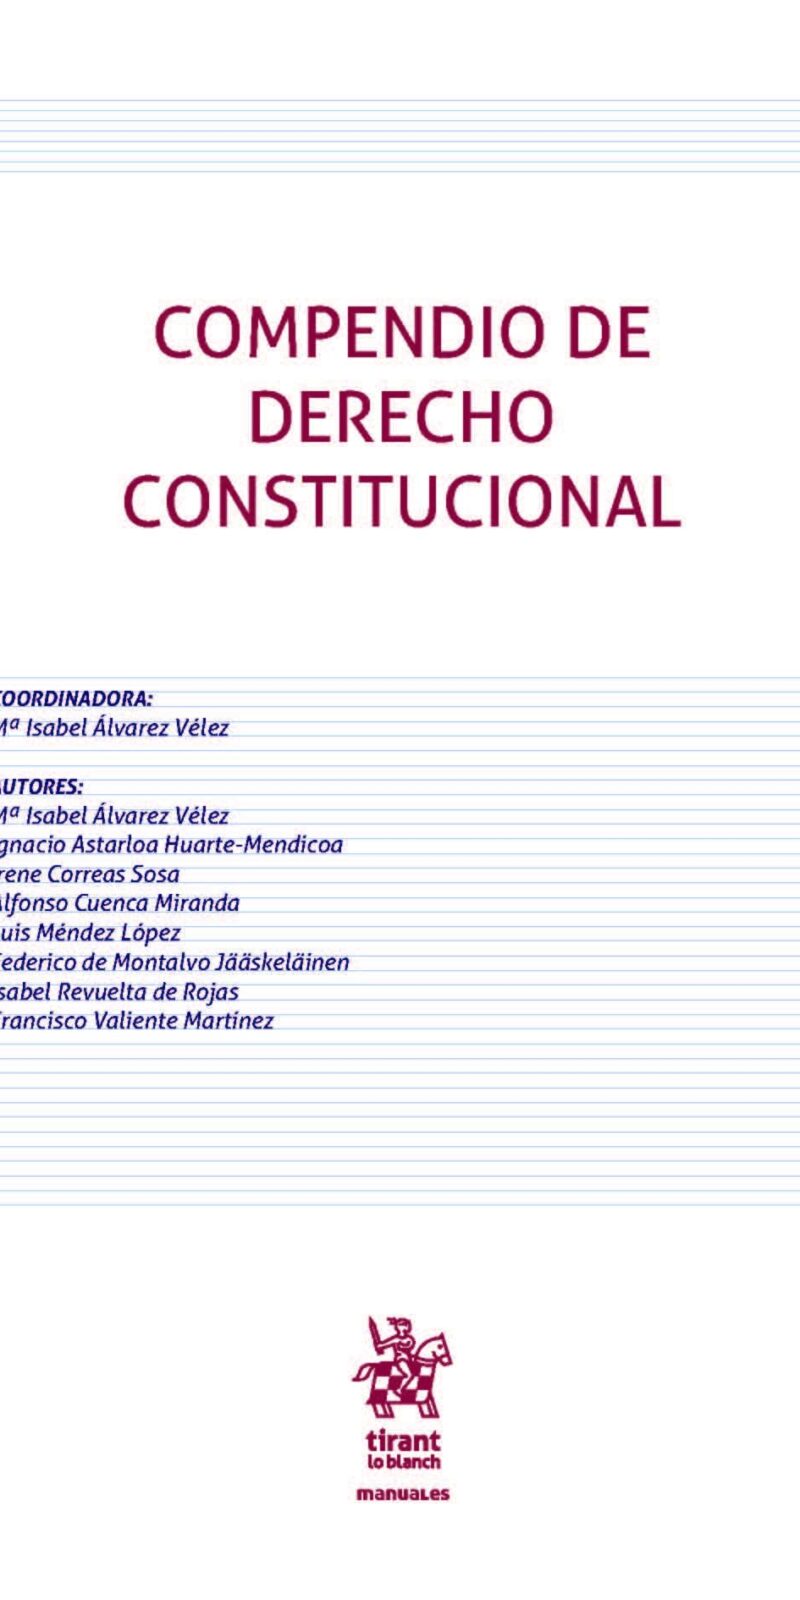 COMPENDIO DE DERECHO CONSTITUCIONAL 2022- ISABEL ALVAREZ VELEZ -TIRANT